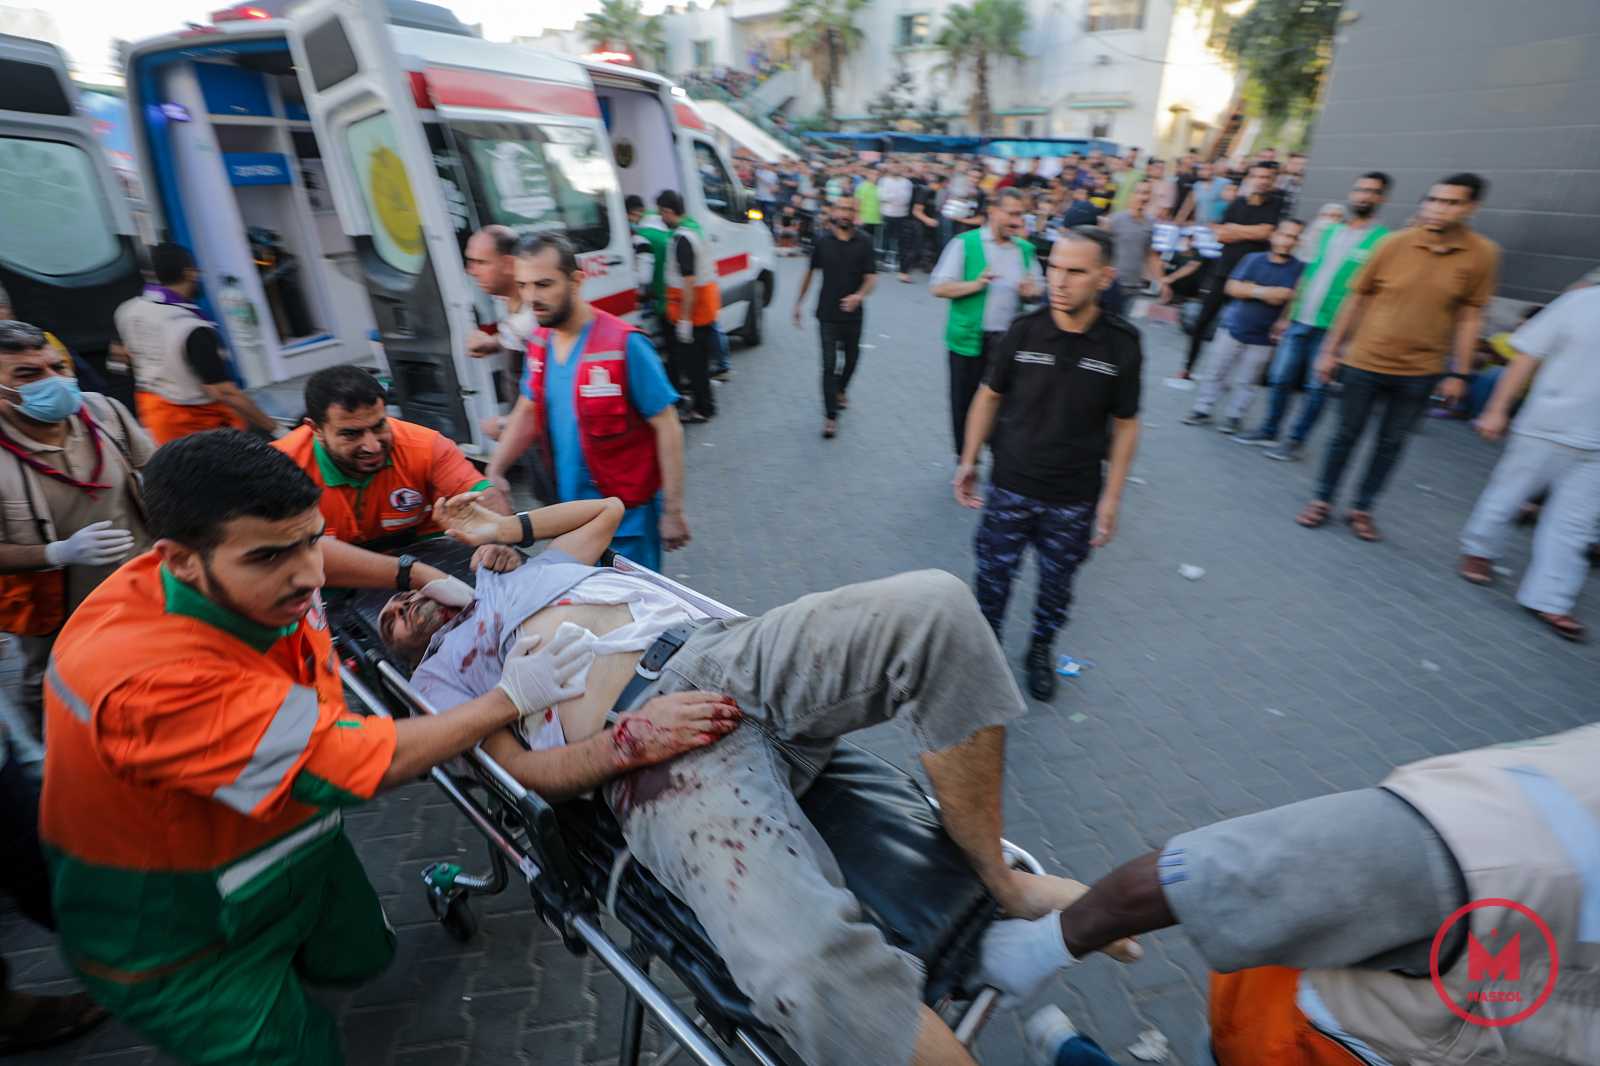 Az izraeli hadsereg szerint az Iszlám Dzsihád terrorszervezet elhibázott rakétakilövése okozta a kórházi robbanást a Gázai övezetben. A hírszerzési információk és számos forrás alapján a palesztin Iszlám Dzsihád szervezet a felelős a gázai kórházat eltaláló rakéta indításáért - jelentette be az izraeli hadsereg szóvivője hivatalos közleményében.